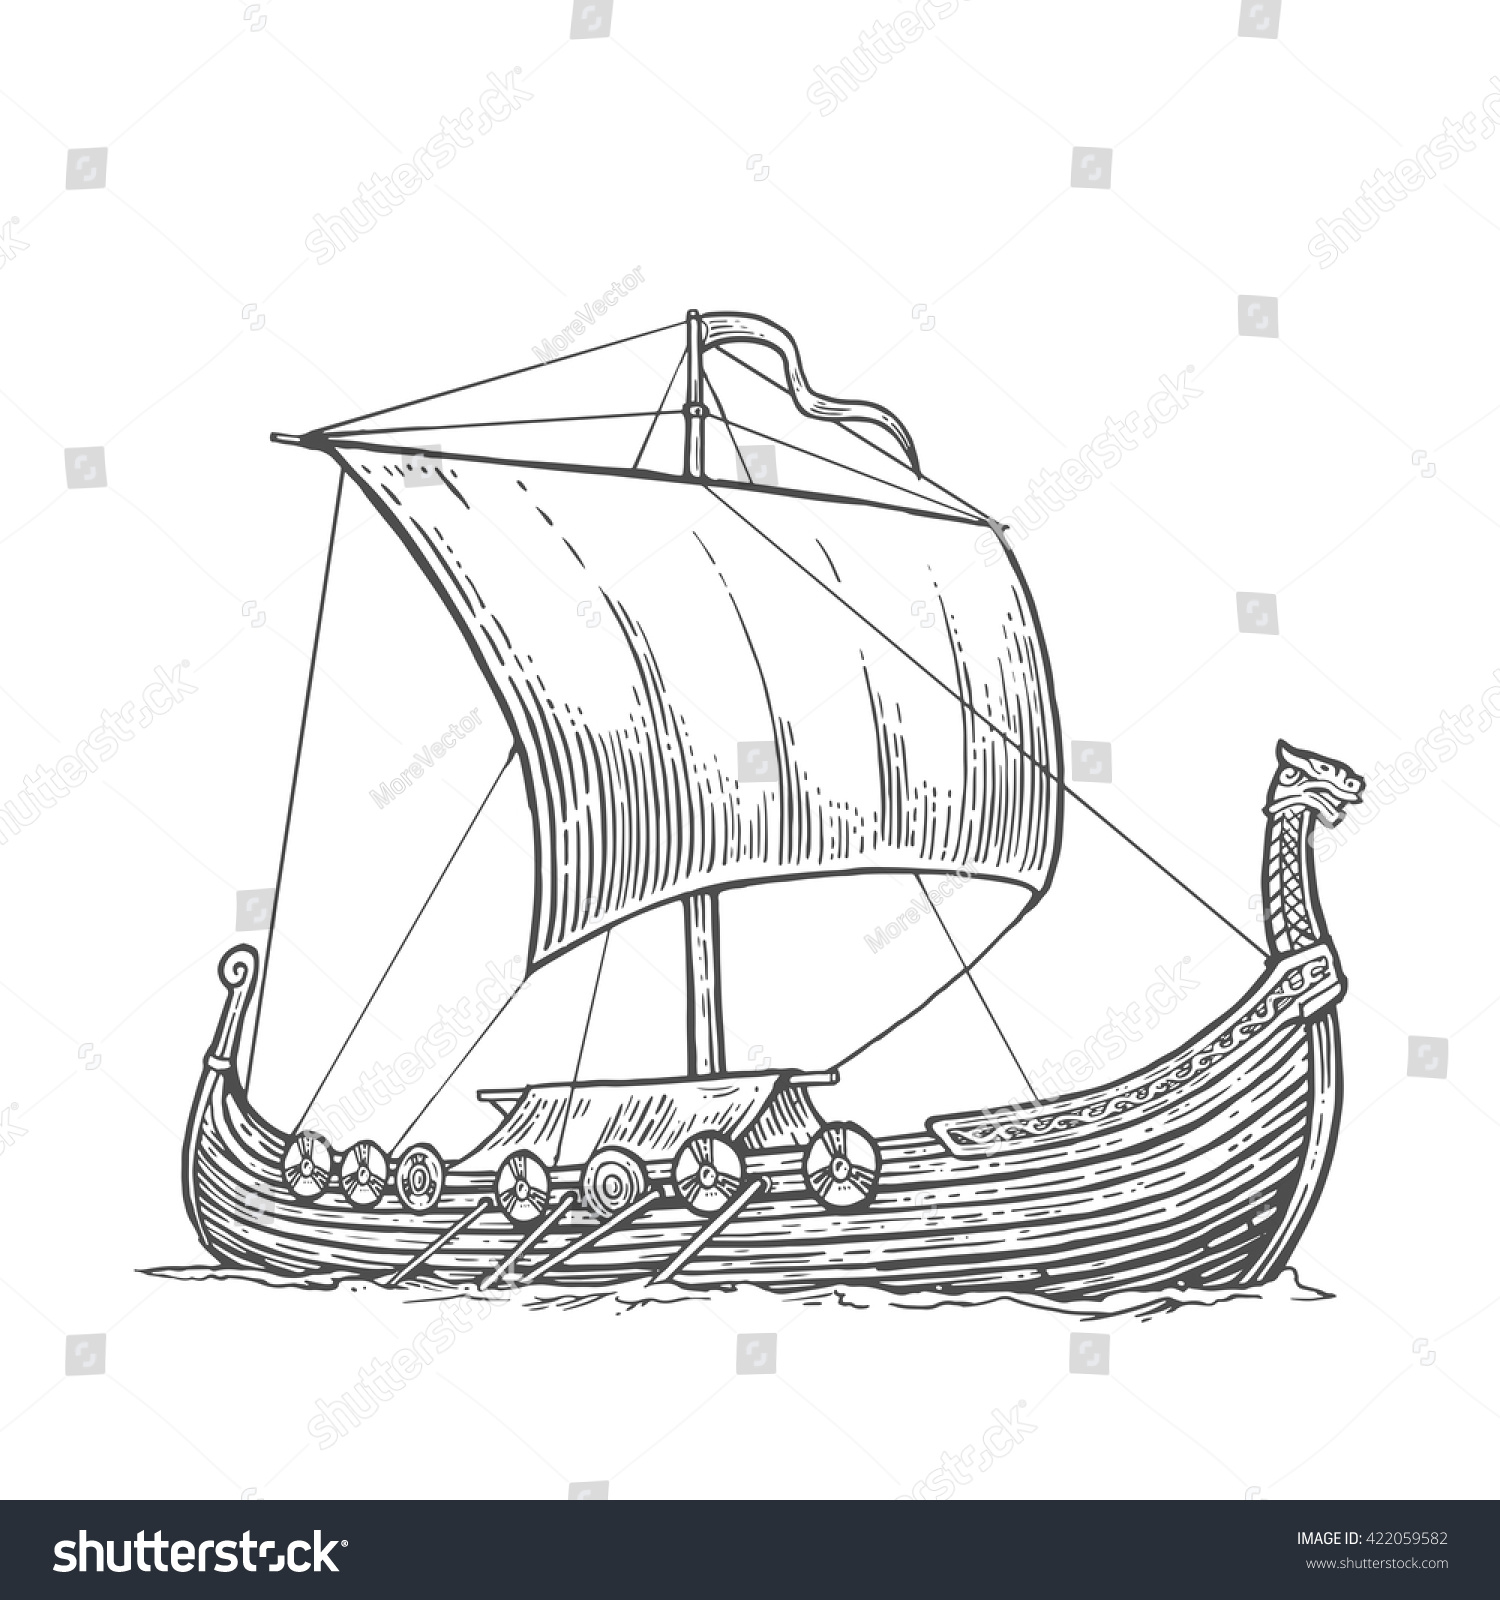 1,301 Viking Ship Drawing Images, Stock Photos & Vectors ...